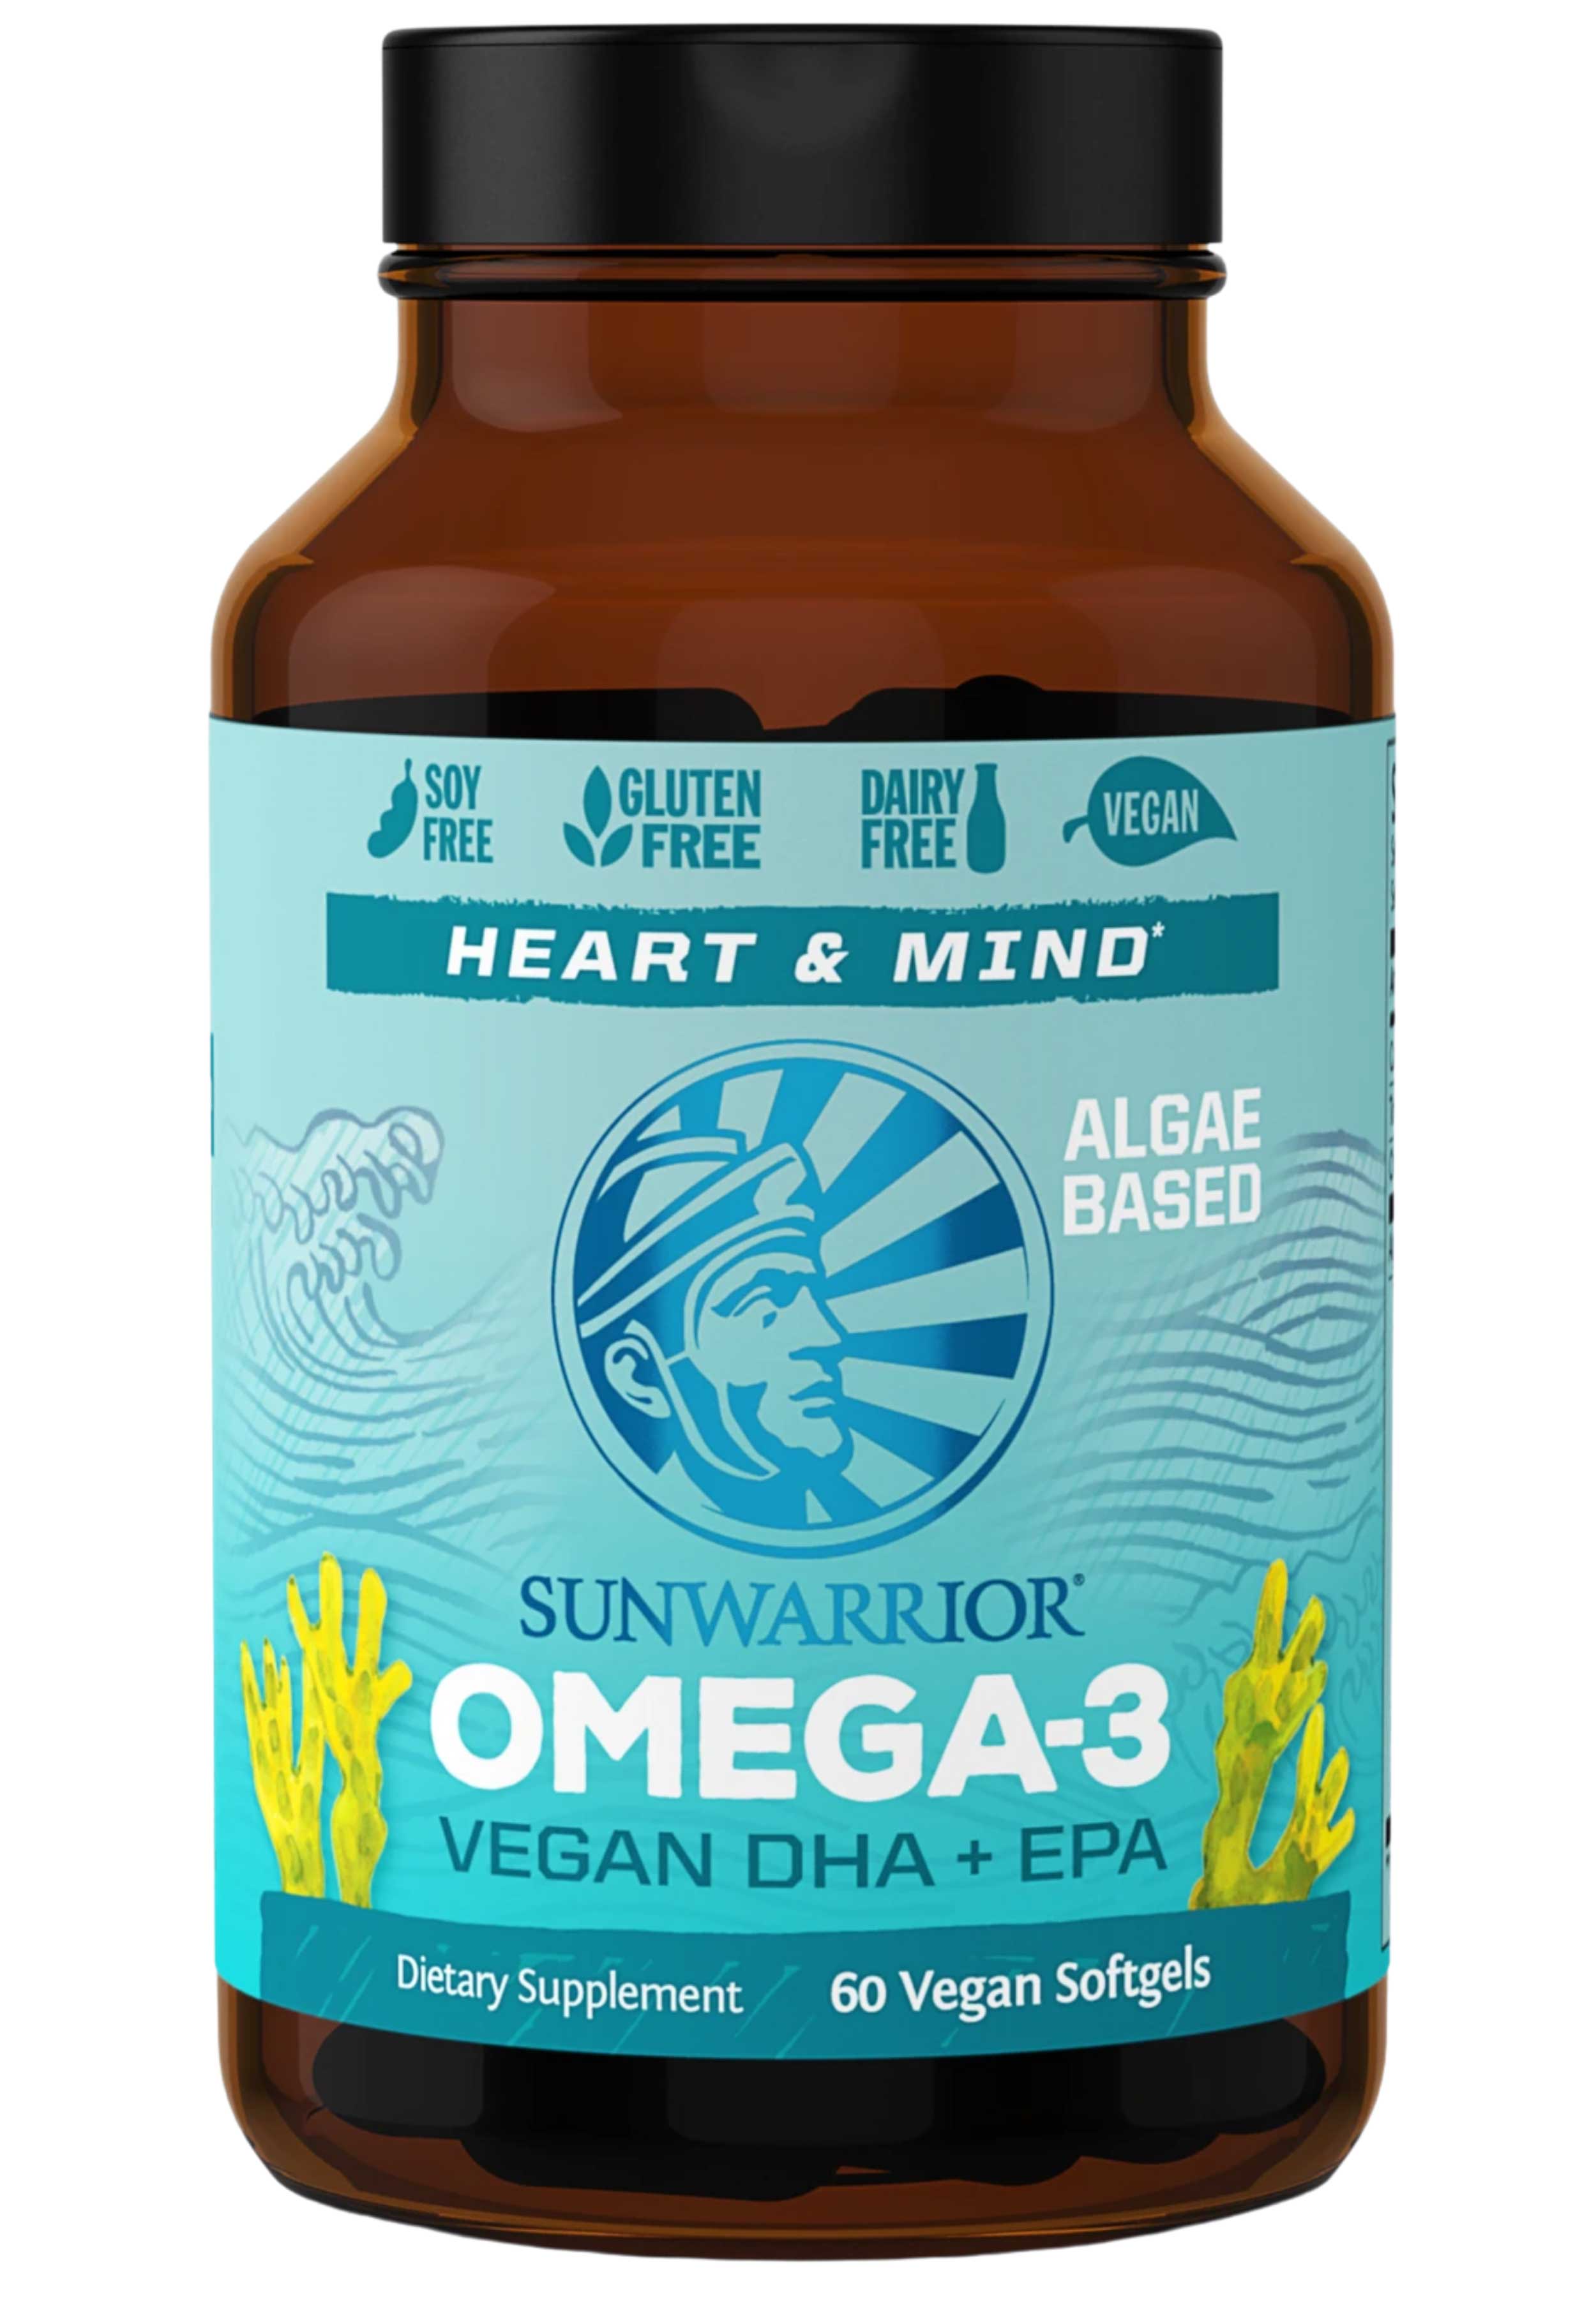 Sunwarrior Omega Vegan DHA EPA